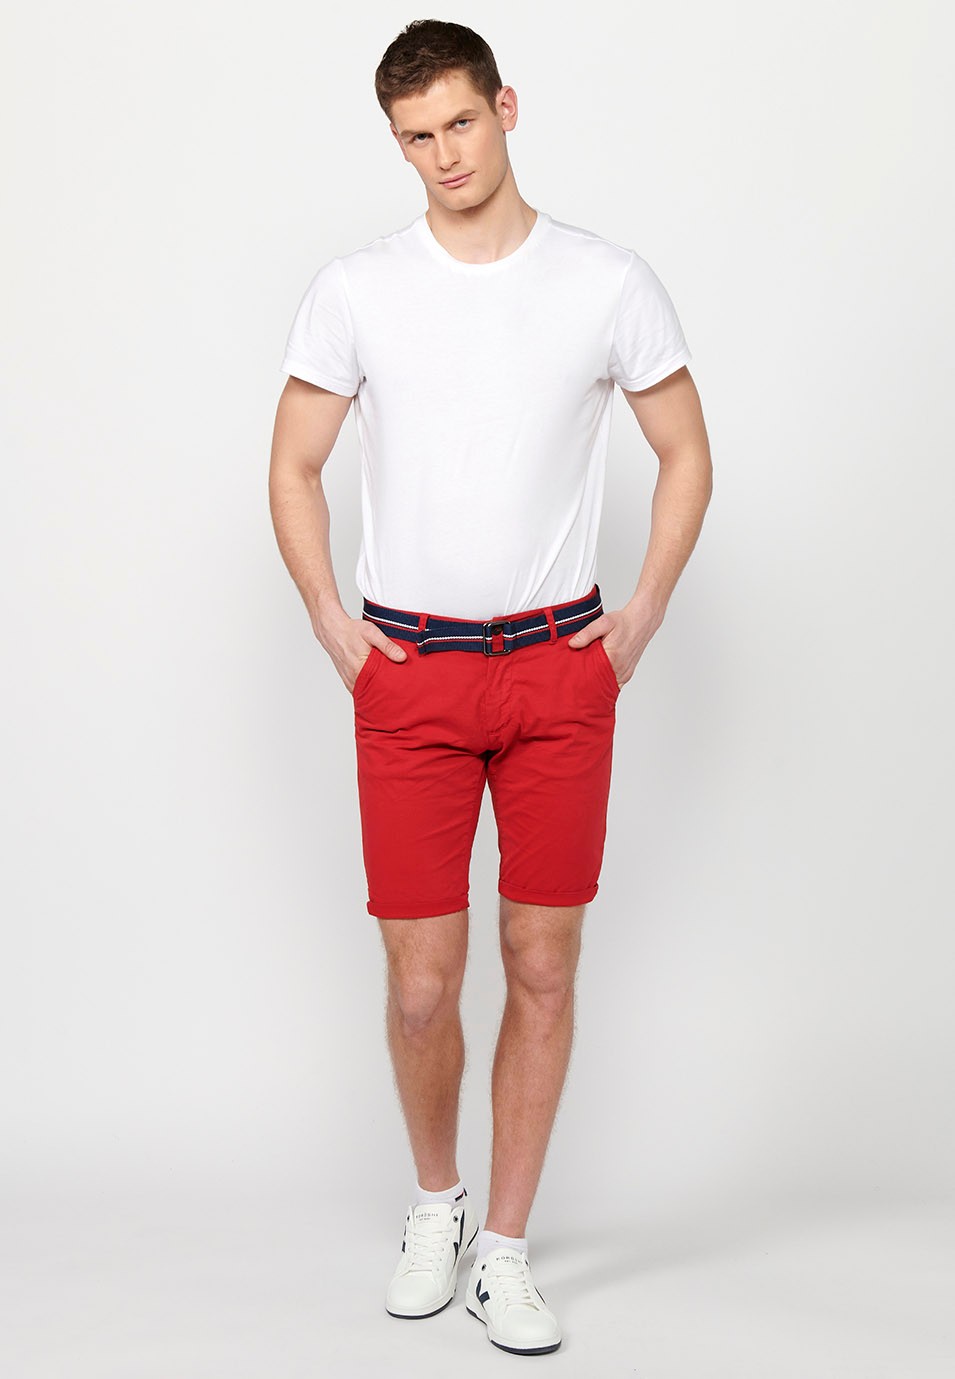 Pantalons curts acabats en volta amb Tancament davanter amb cremallera i botó i cinturó de Color Roig per a Home